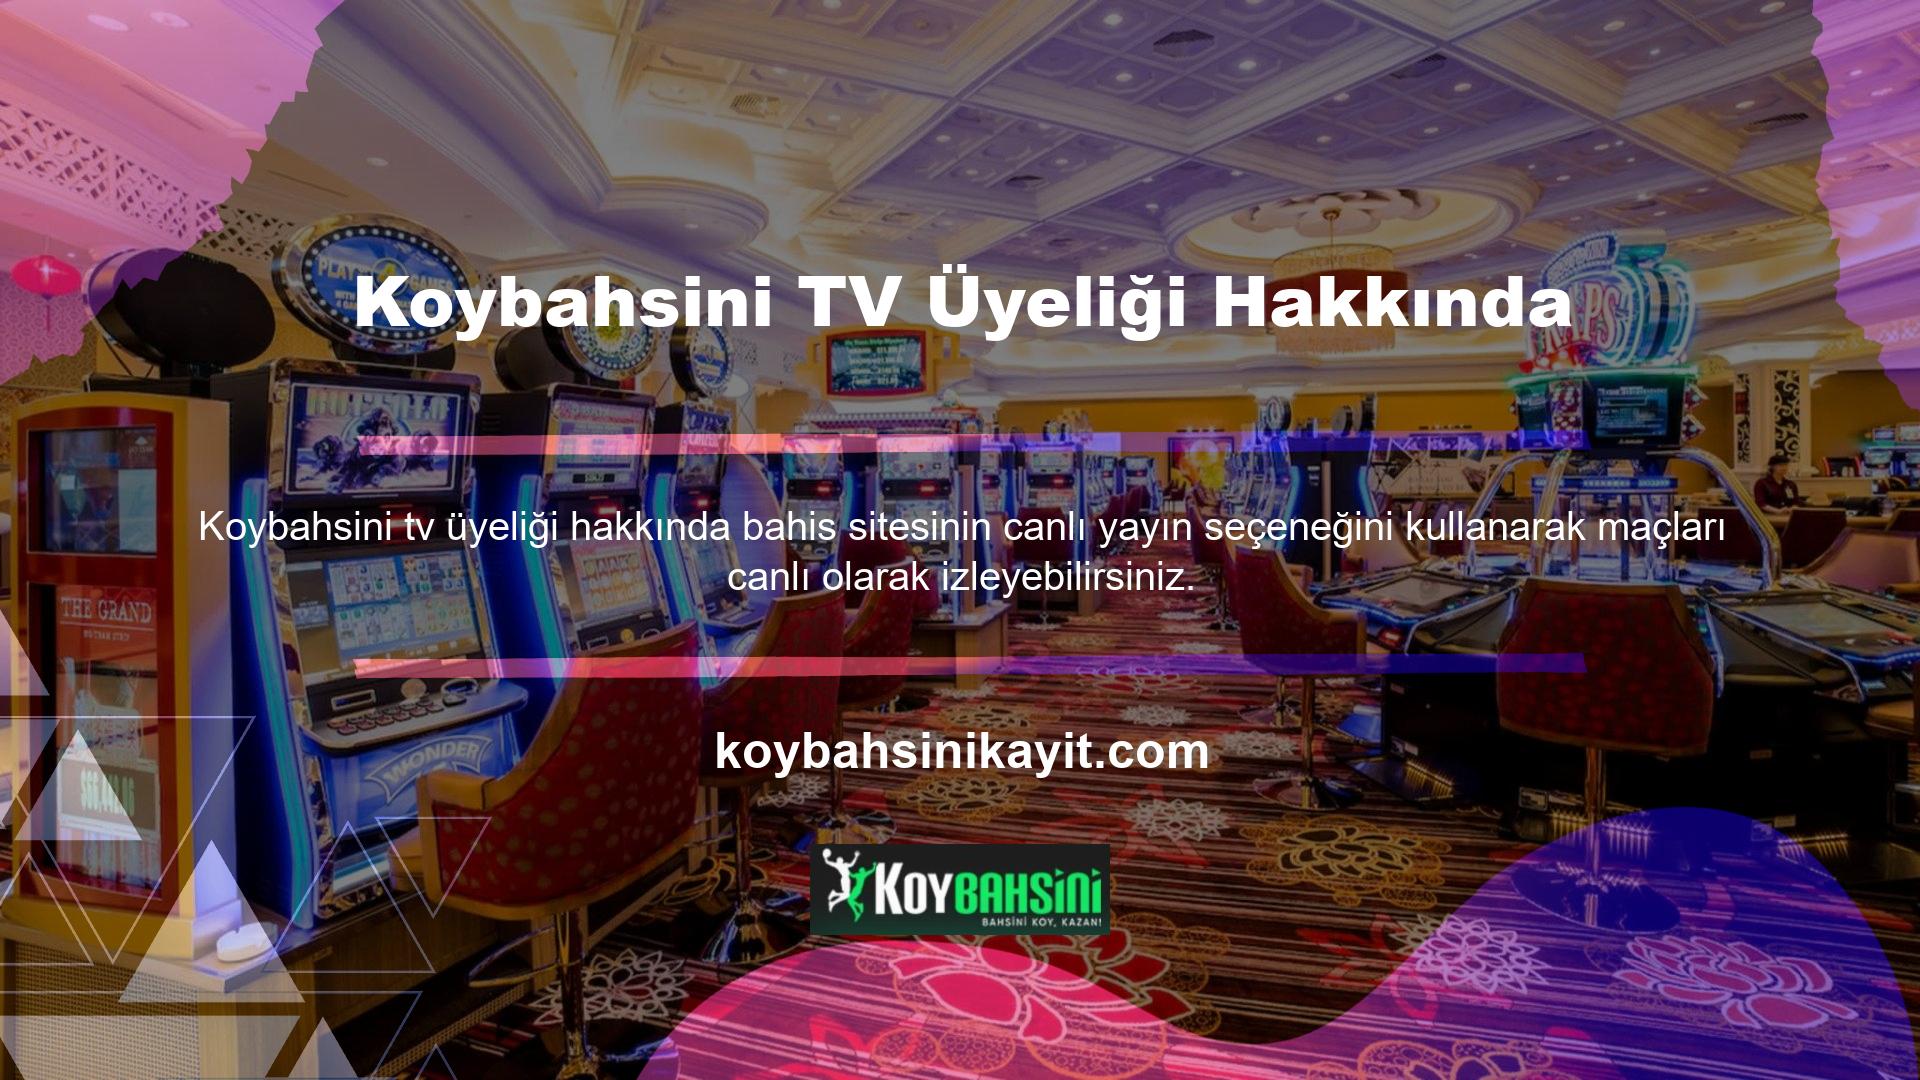 Koybahsini TV üyeliğiyle ilgili olarak TV seçeneklerini kontrol ettim ve herhangi bir engelleme sorununa rastlamadım